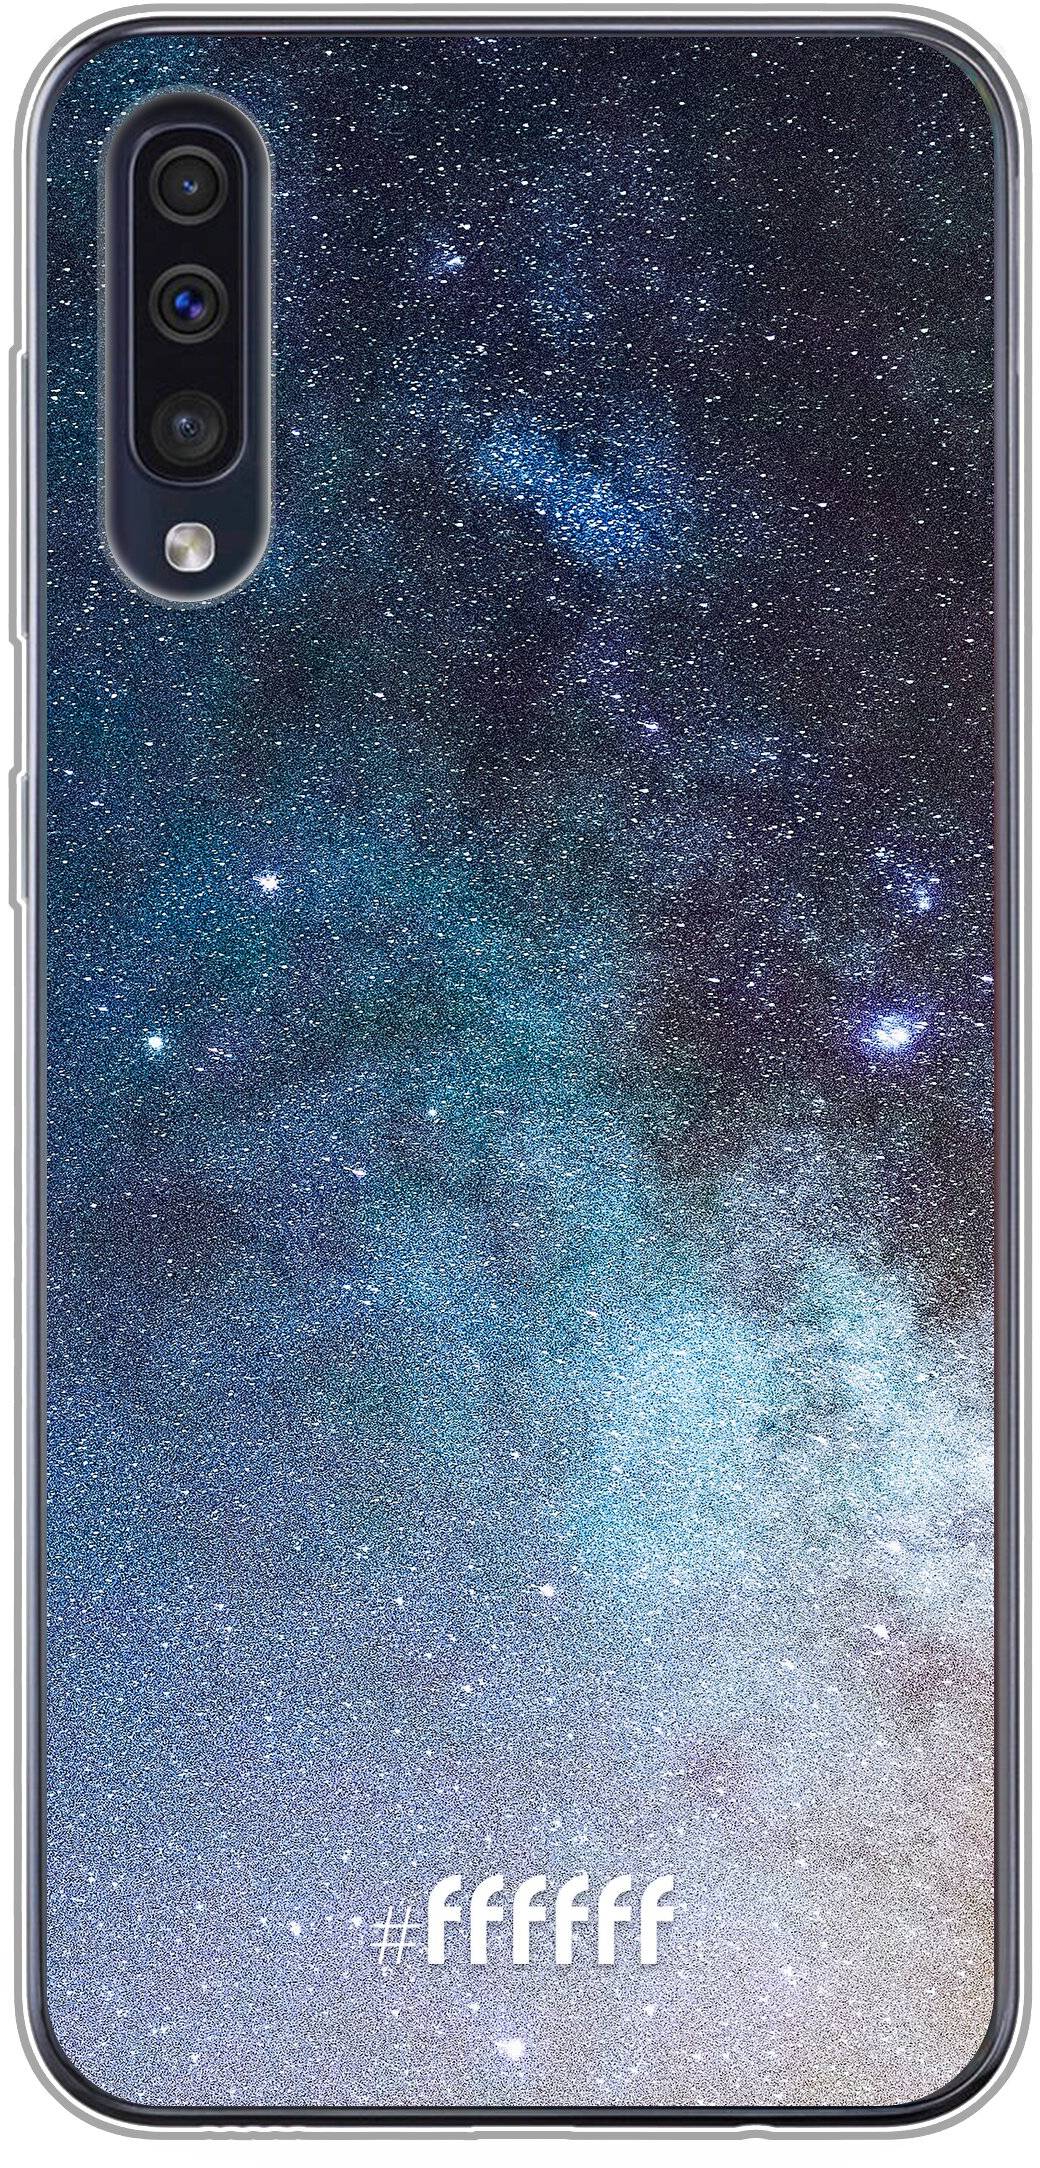 Milky Way Galaxy A50s